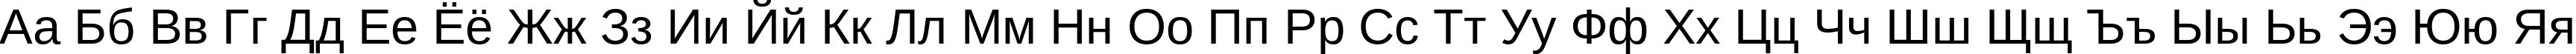 Пример написания русского алфавита шрифтом Arimo